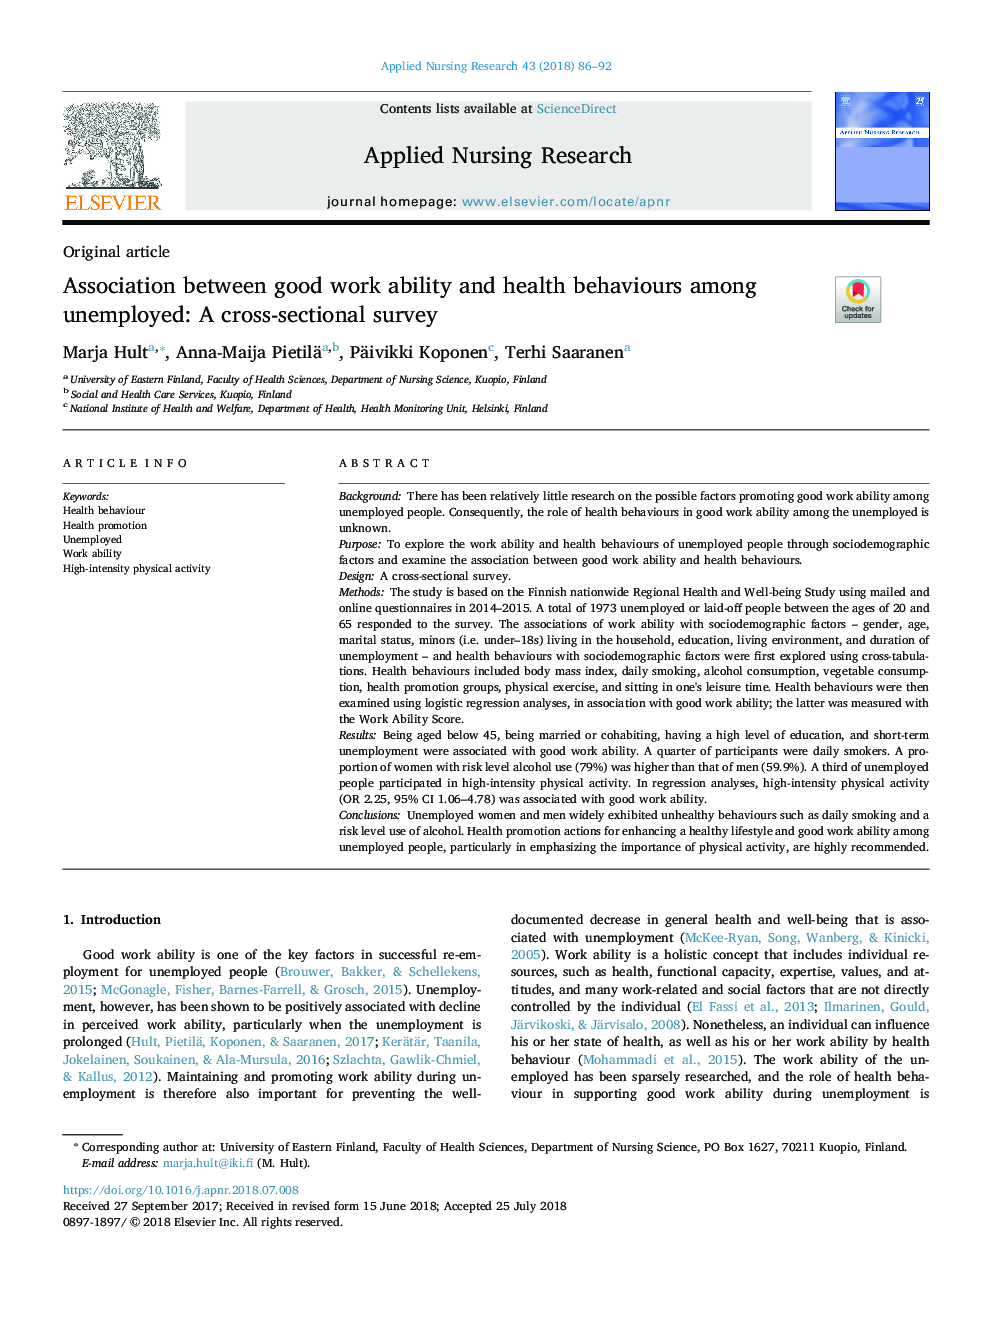 ارتباط بین توانایی کار خوب و رفتارهای بهداشتی در میان بیکاران: یک بررسی مقطعی 